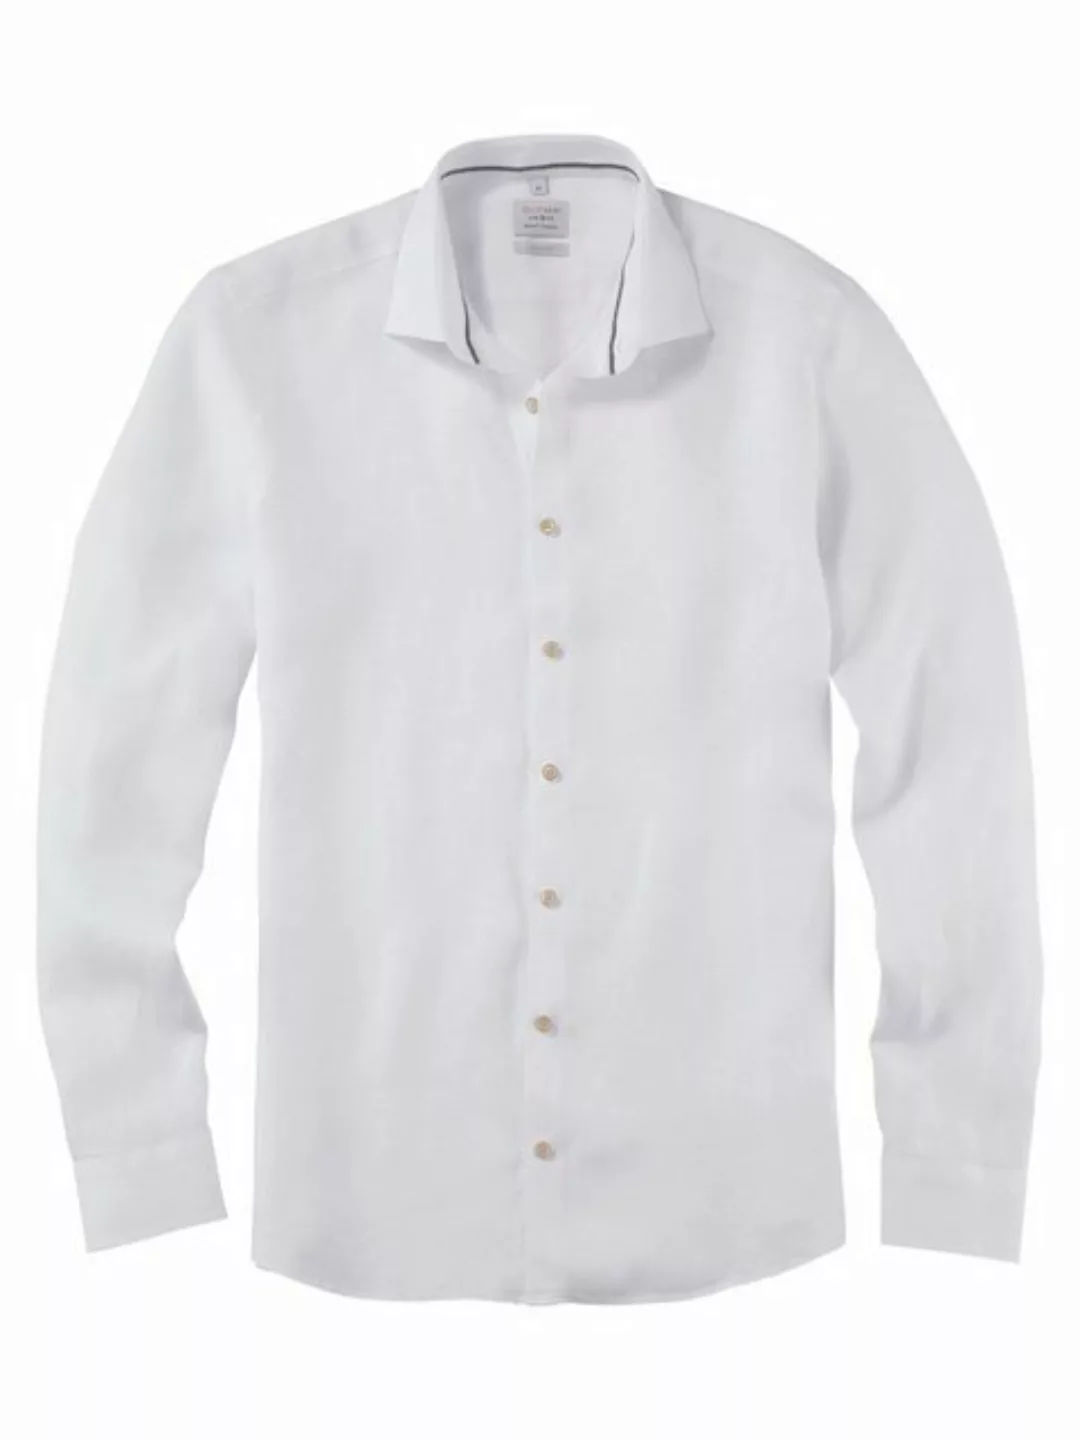 OLYMP Leinenhemd 3228/34 Hemden günstig online kaufen